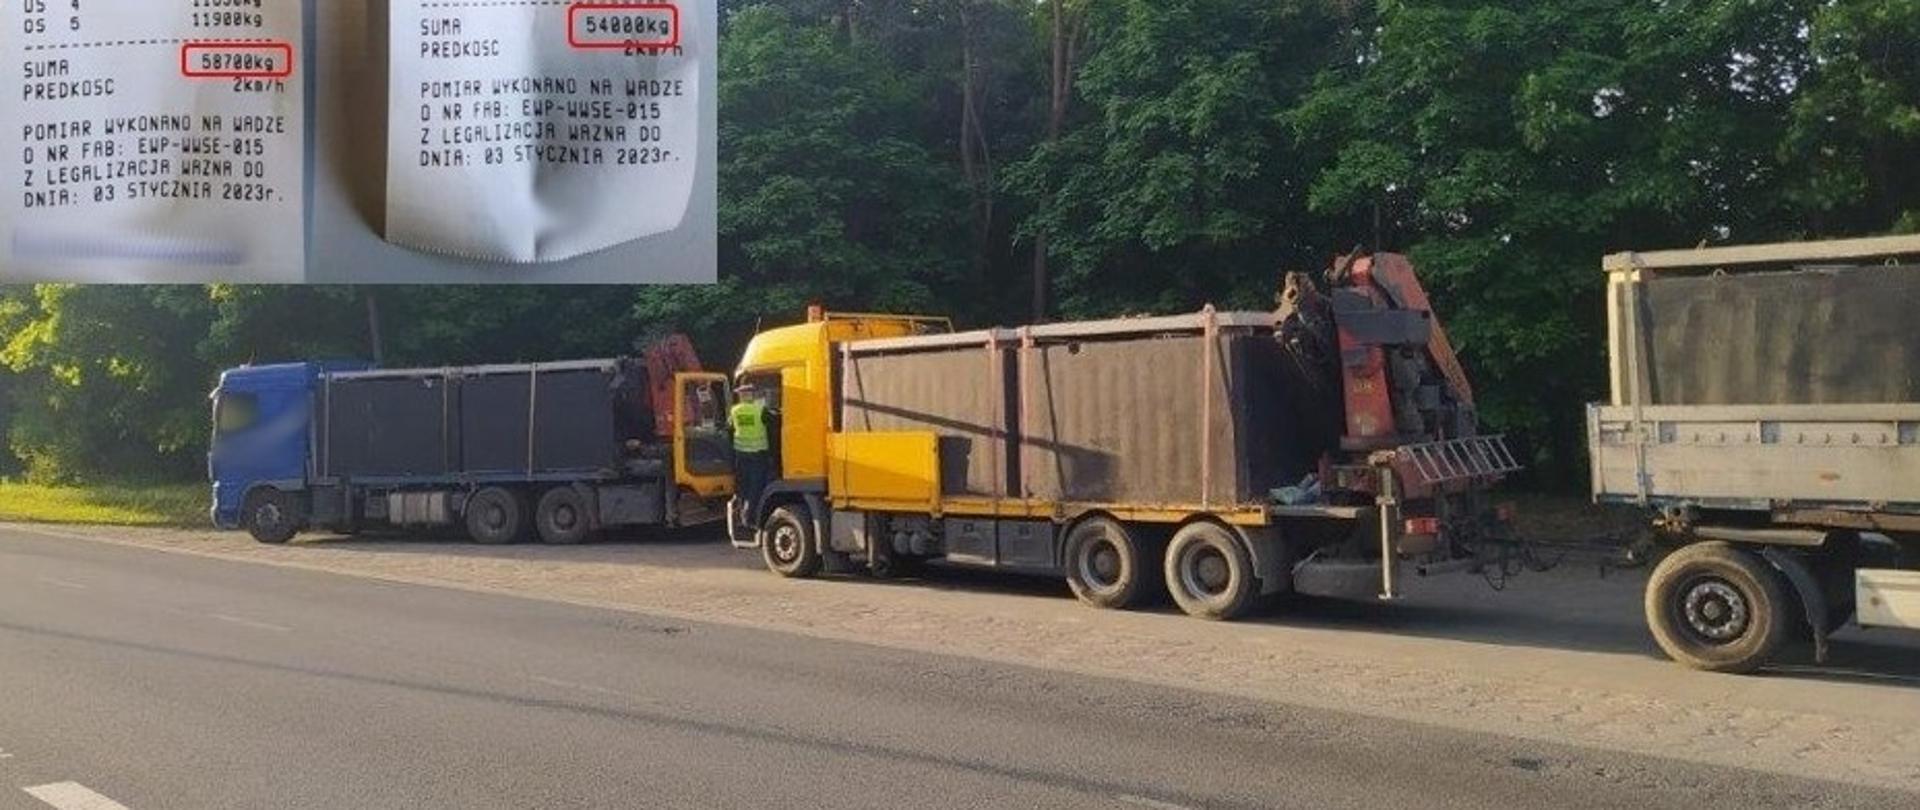 Za ciężkie zespoły pojazdów z przewożonymi szambami betonowymi stoją w punkcie kontrolnym ITD. Inspektor pobiera wymagane dokumenty od kierowcy jednej z zatrzymanych ciężarówek.